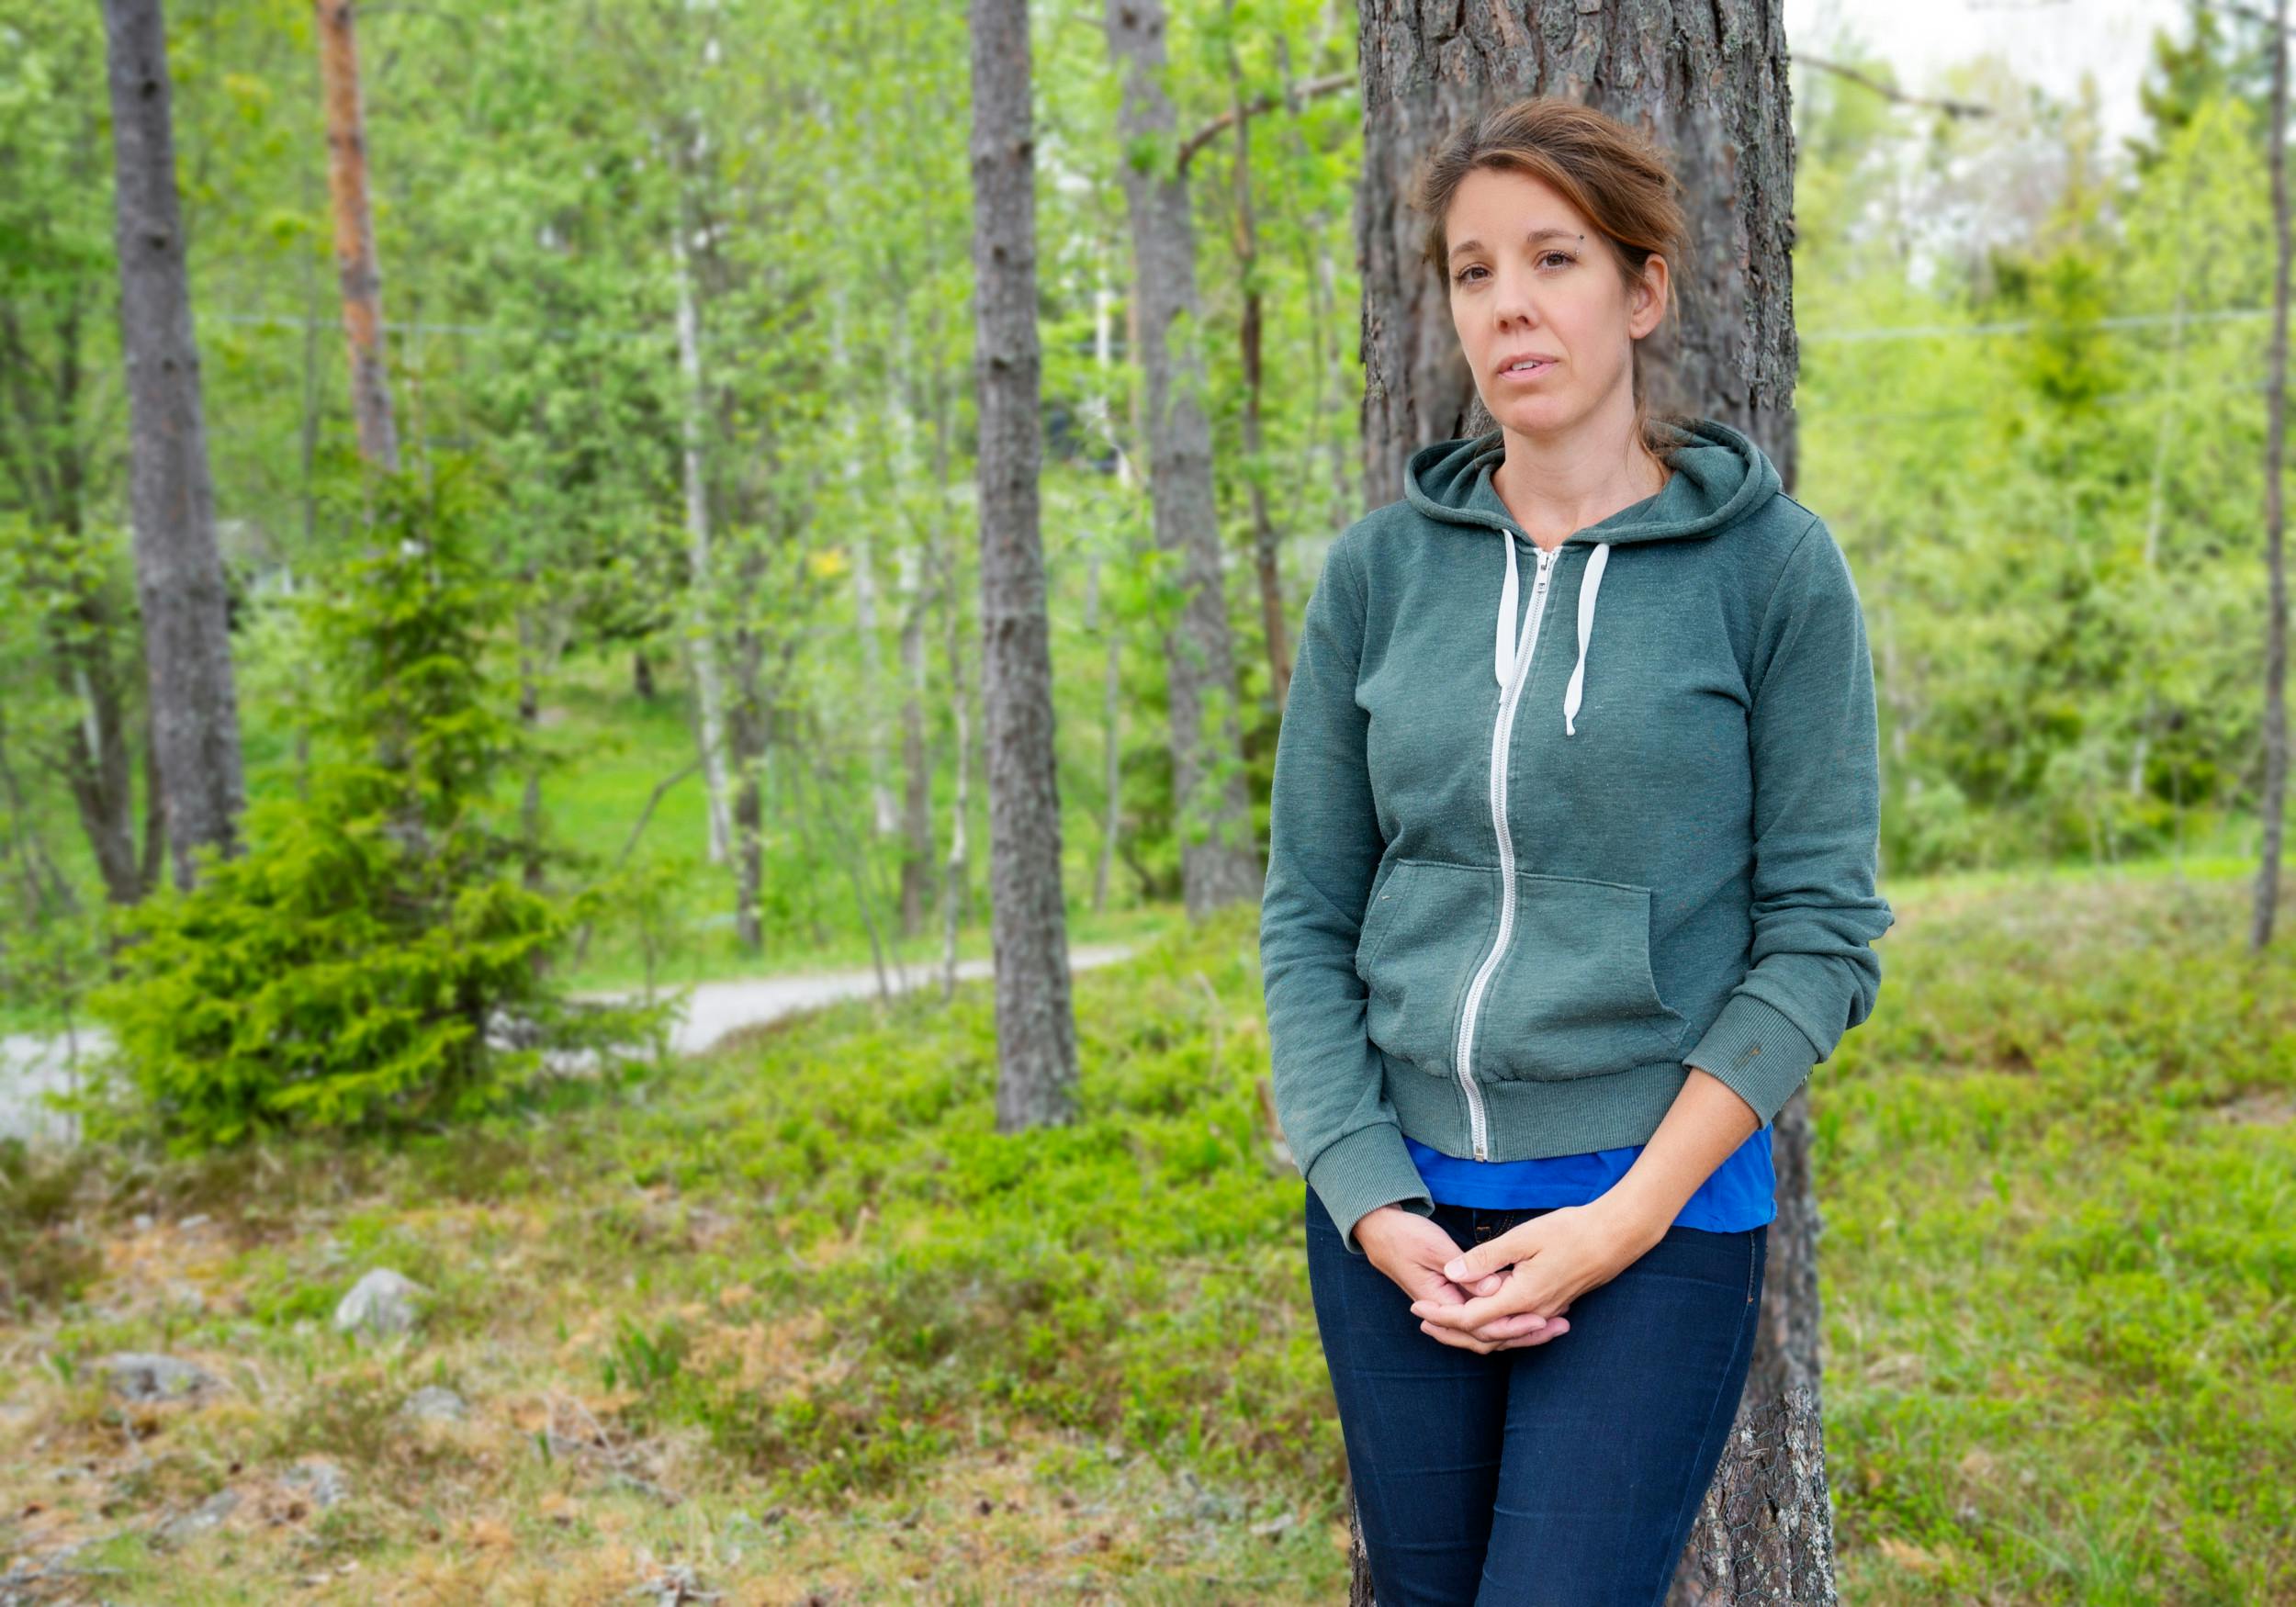 Jenny Eiseb Söderstrand, 40, ses her i skoven ved familiens sommerhus, hvorfra hendes mor forsvandt sidste år.